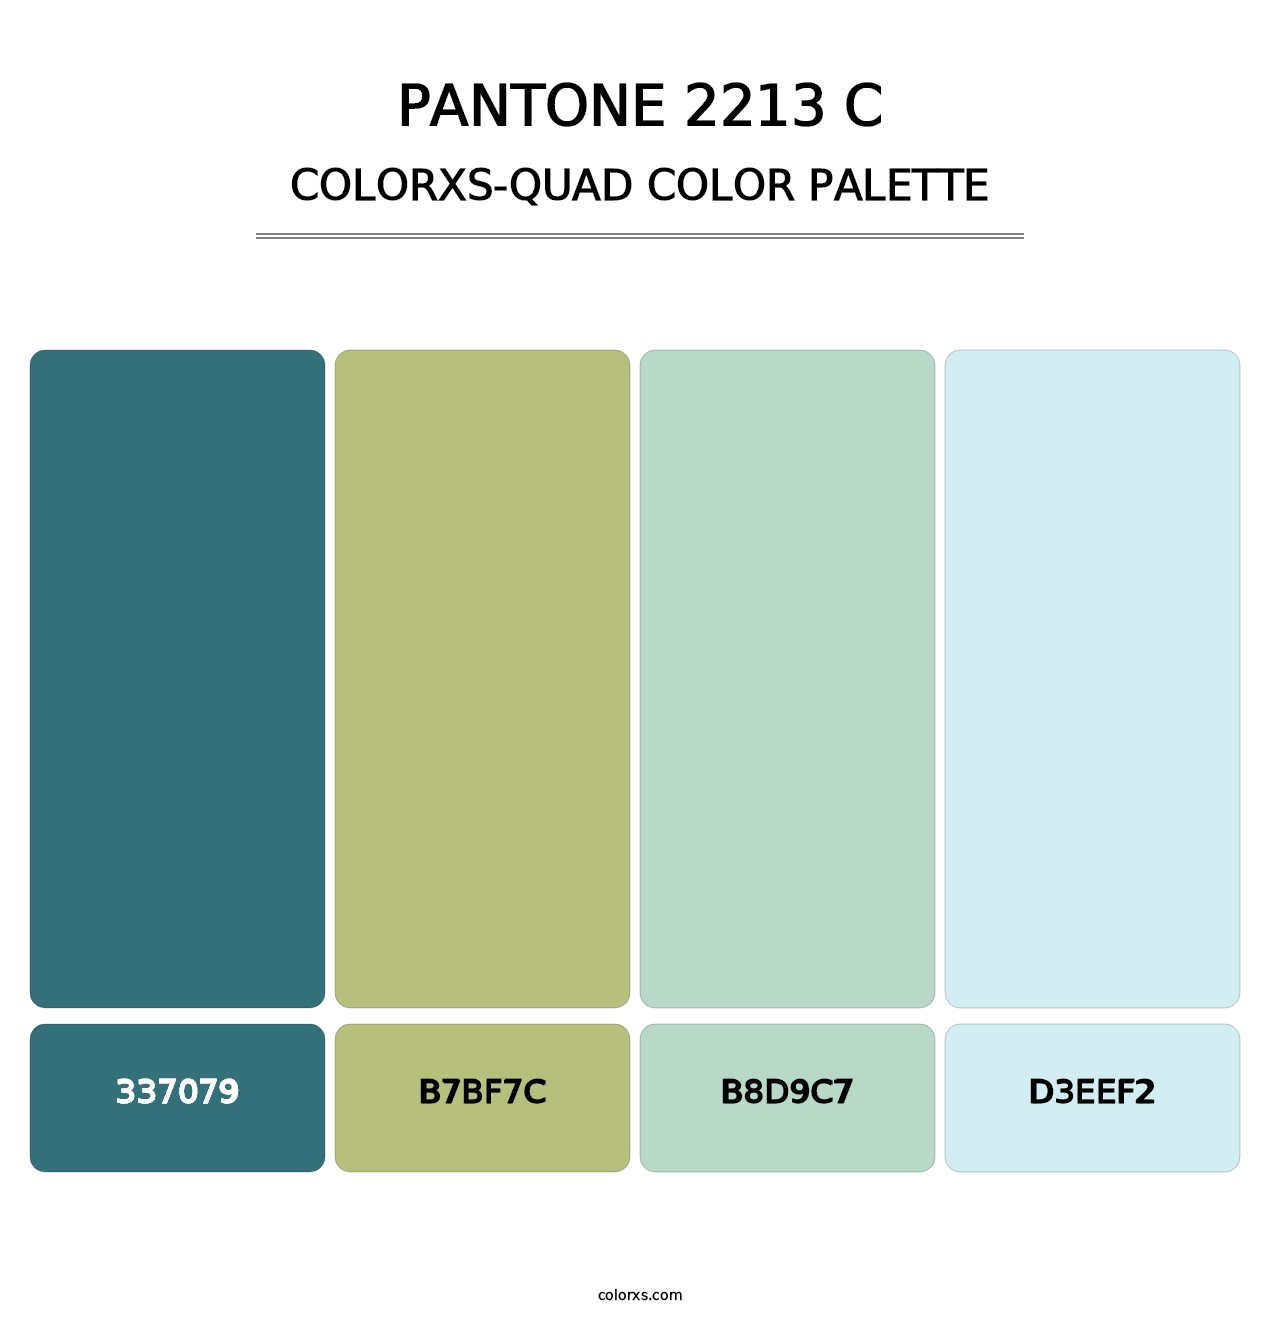 PANTONE 2213 C - Colorxs Quad Palette